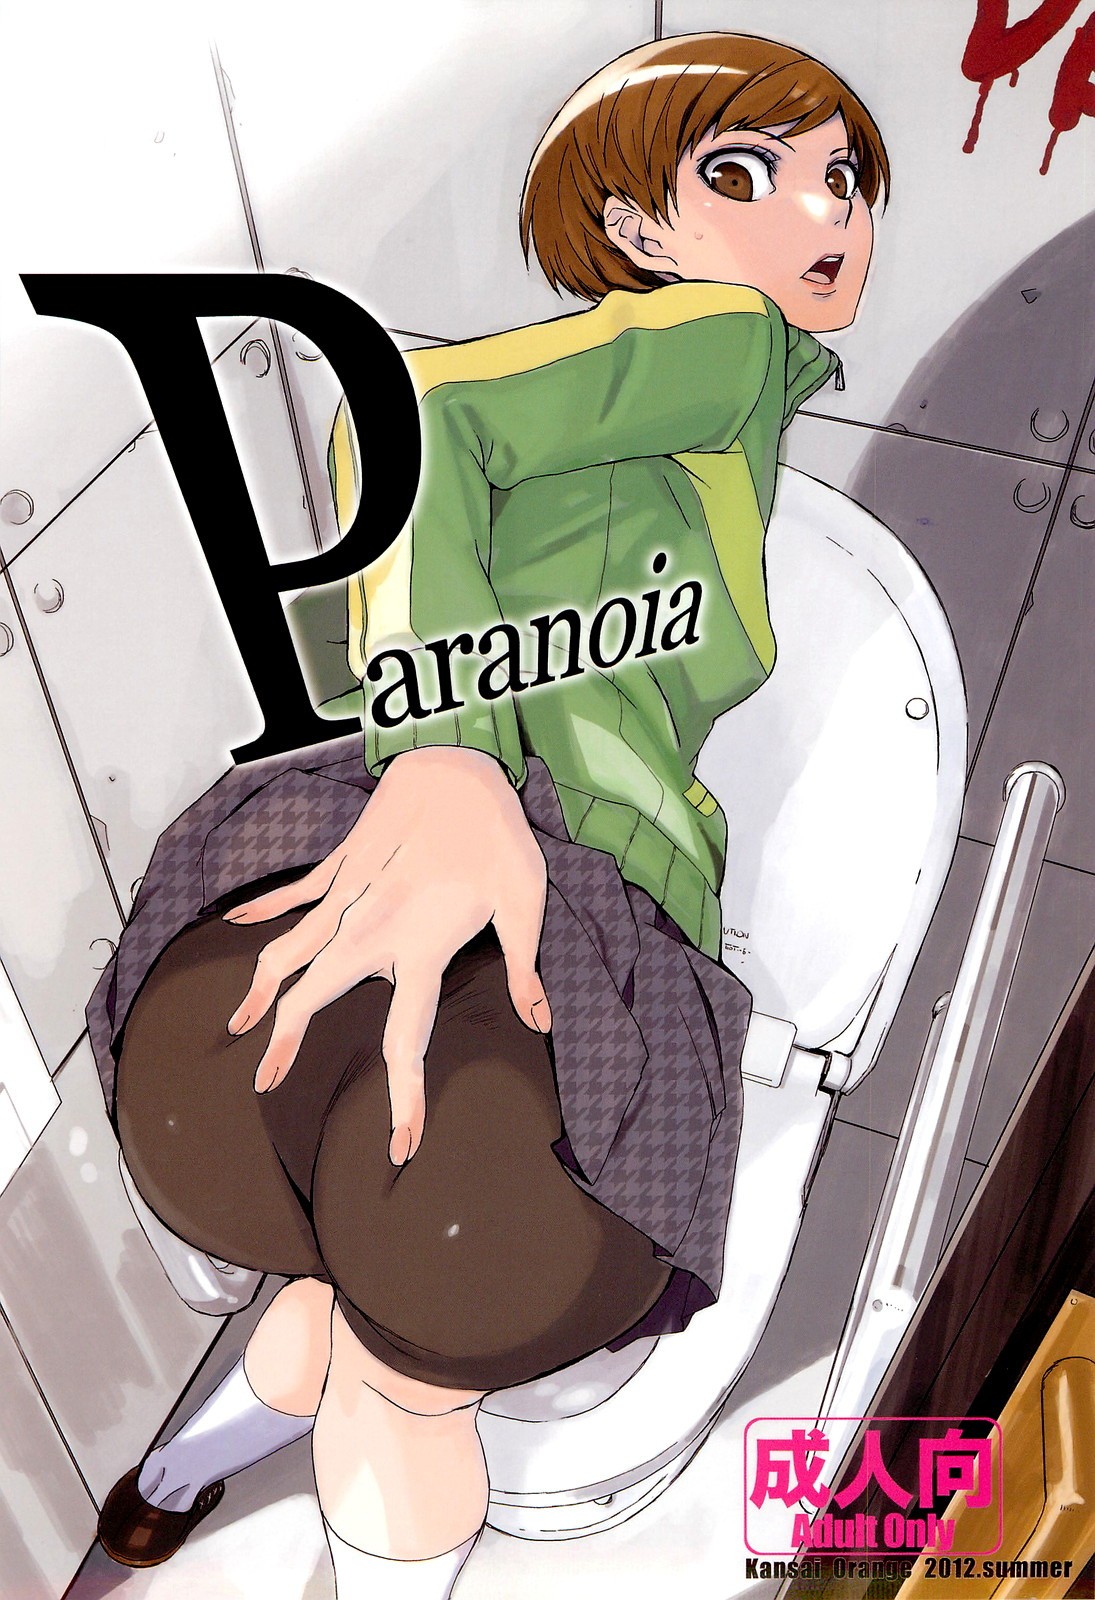 Paranoia hentai manga picture 1